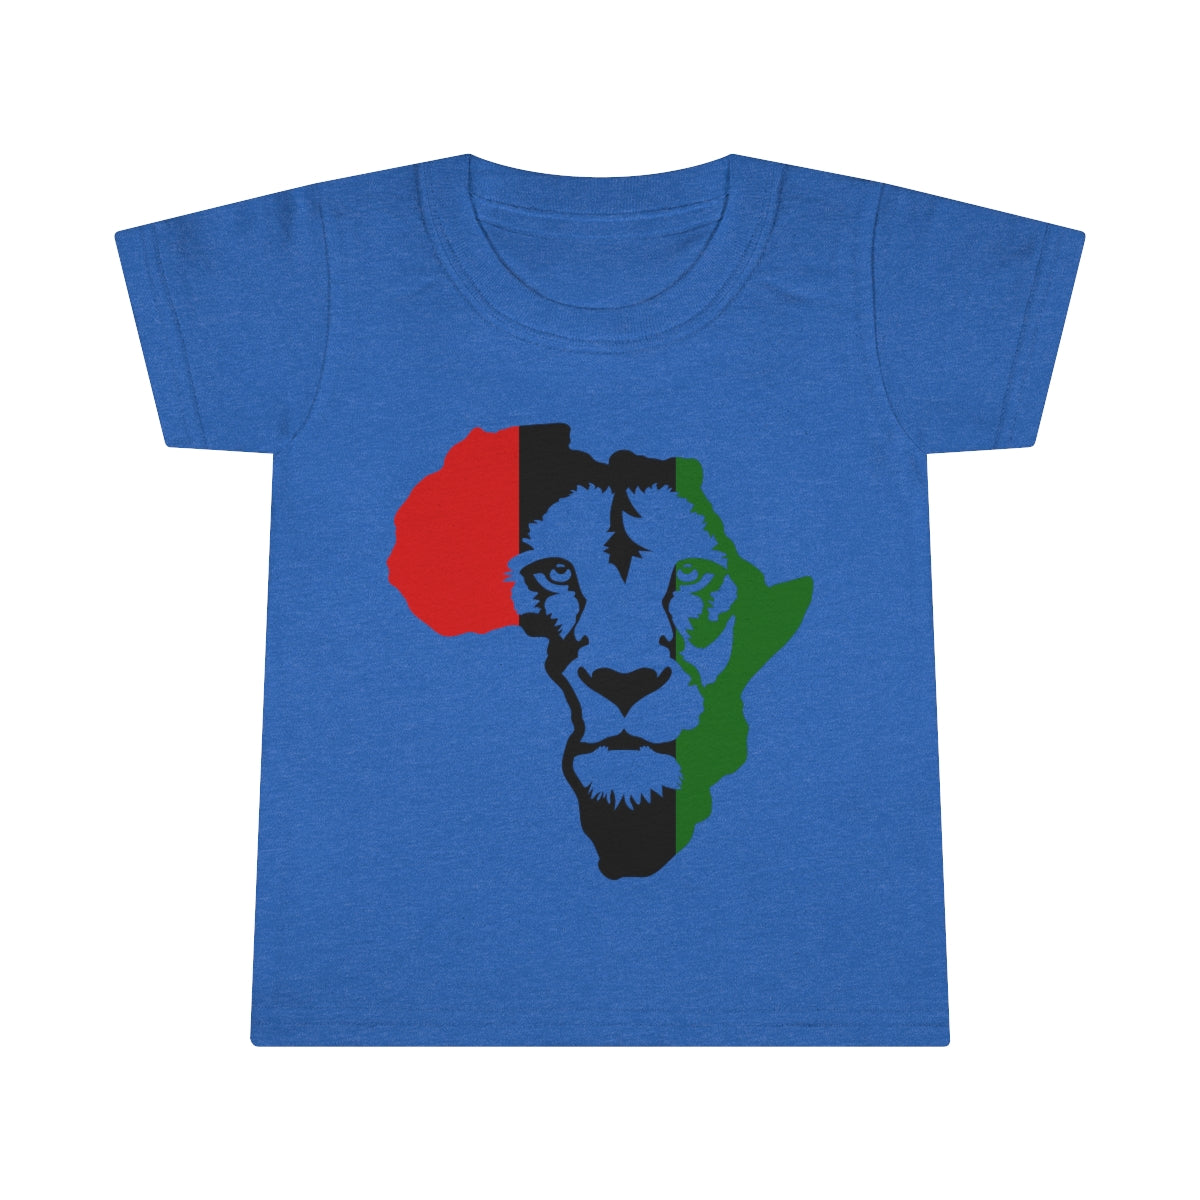 Lion King Toddler T-shirt